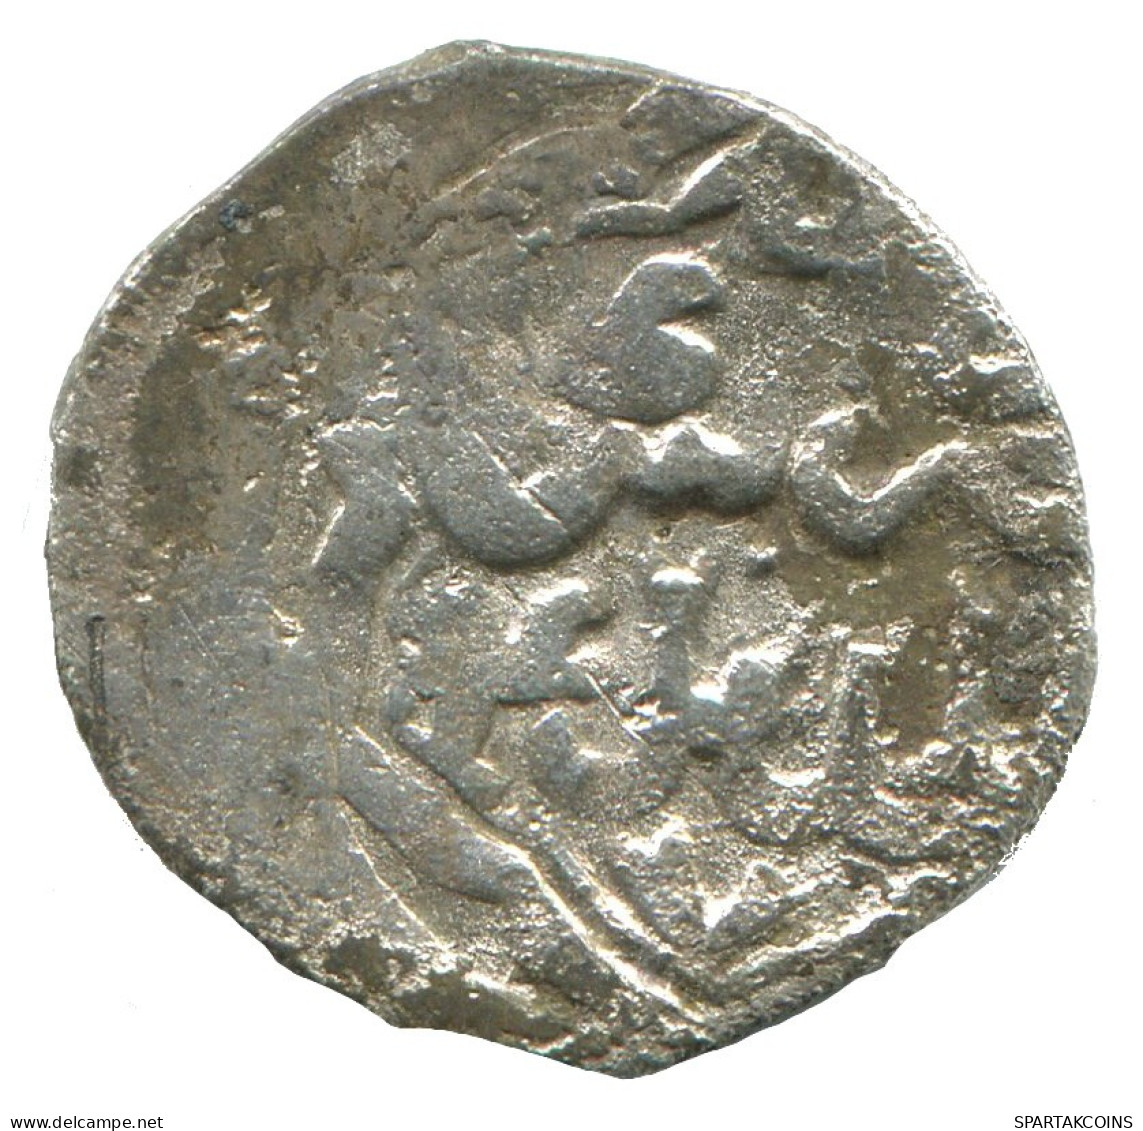 GOLDEN HORDE Silver Dirham Medieval Islamic Coin 1.5g/16mm #NNN2021.8.F.A - Islamic